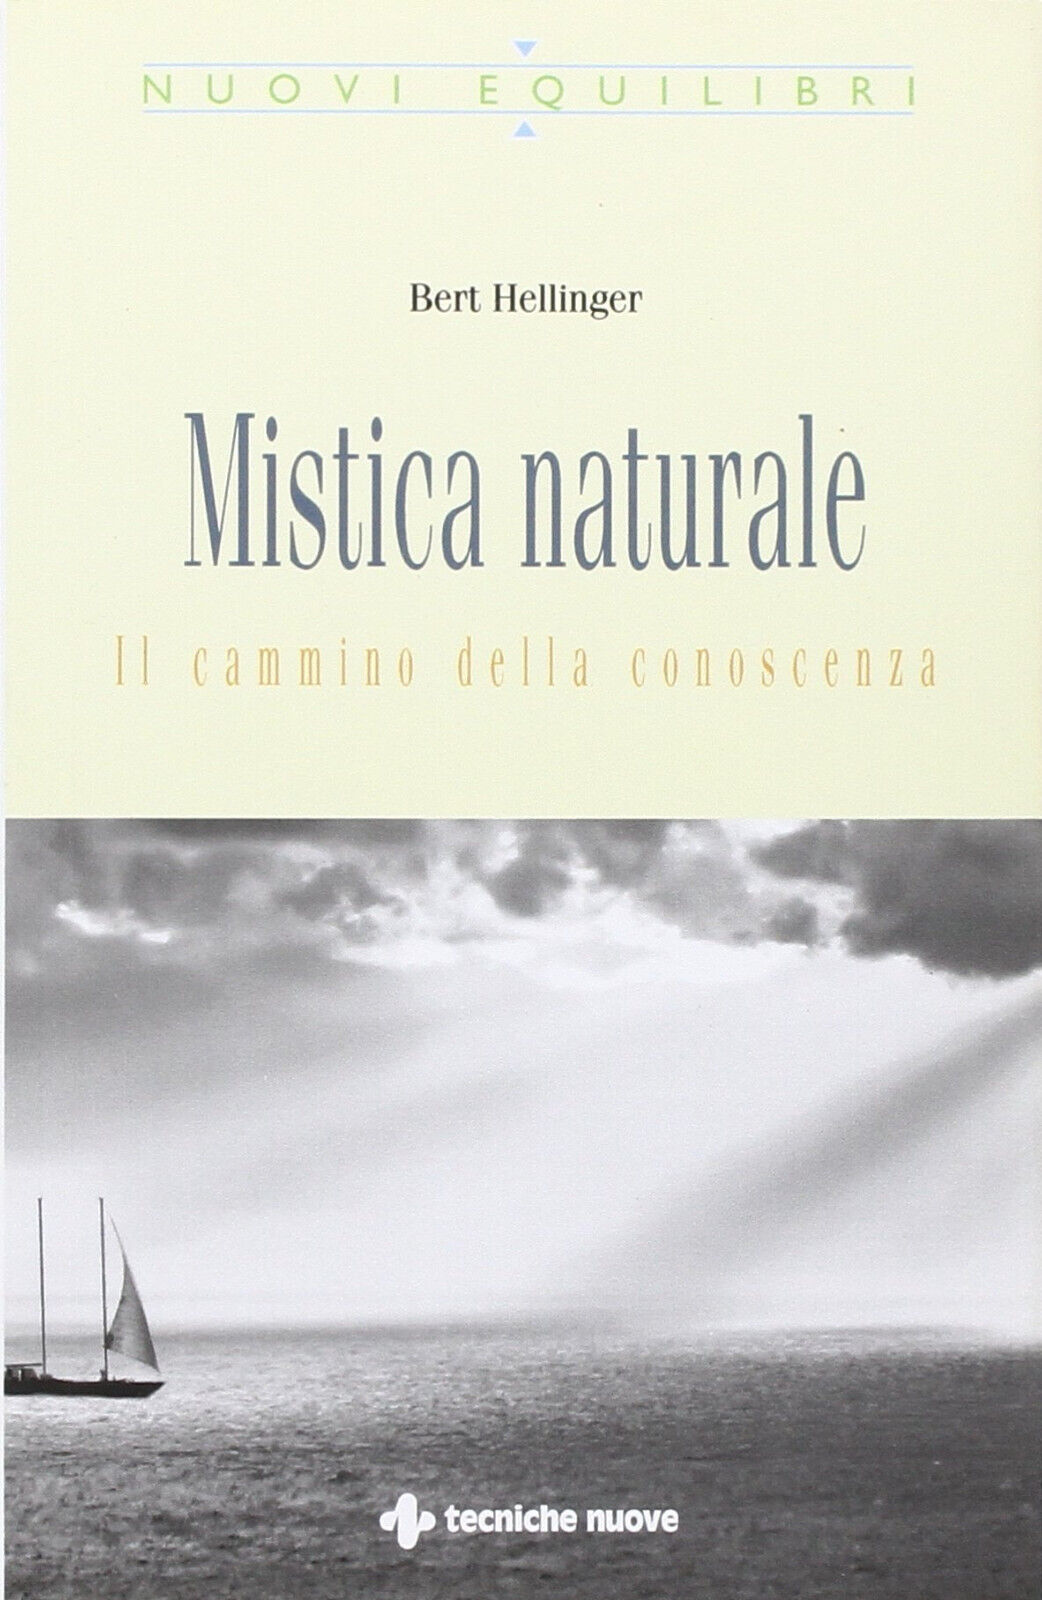 Mistica naturale - Bert Hellinger - Tecniche nuove, 2009